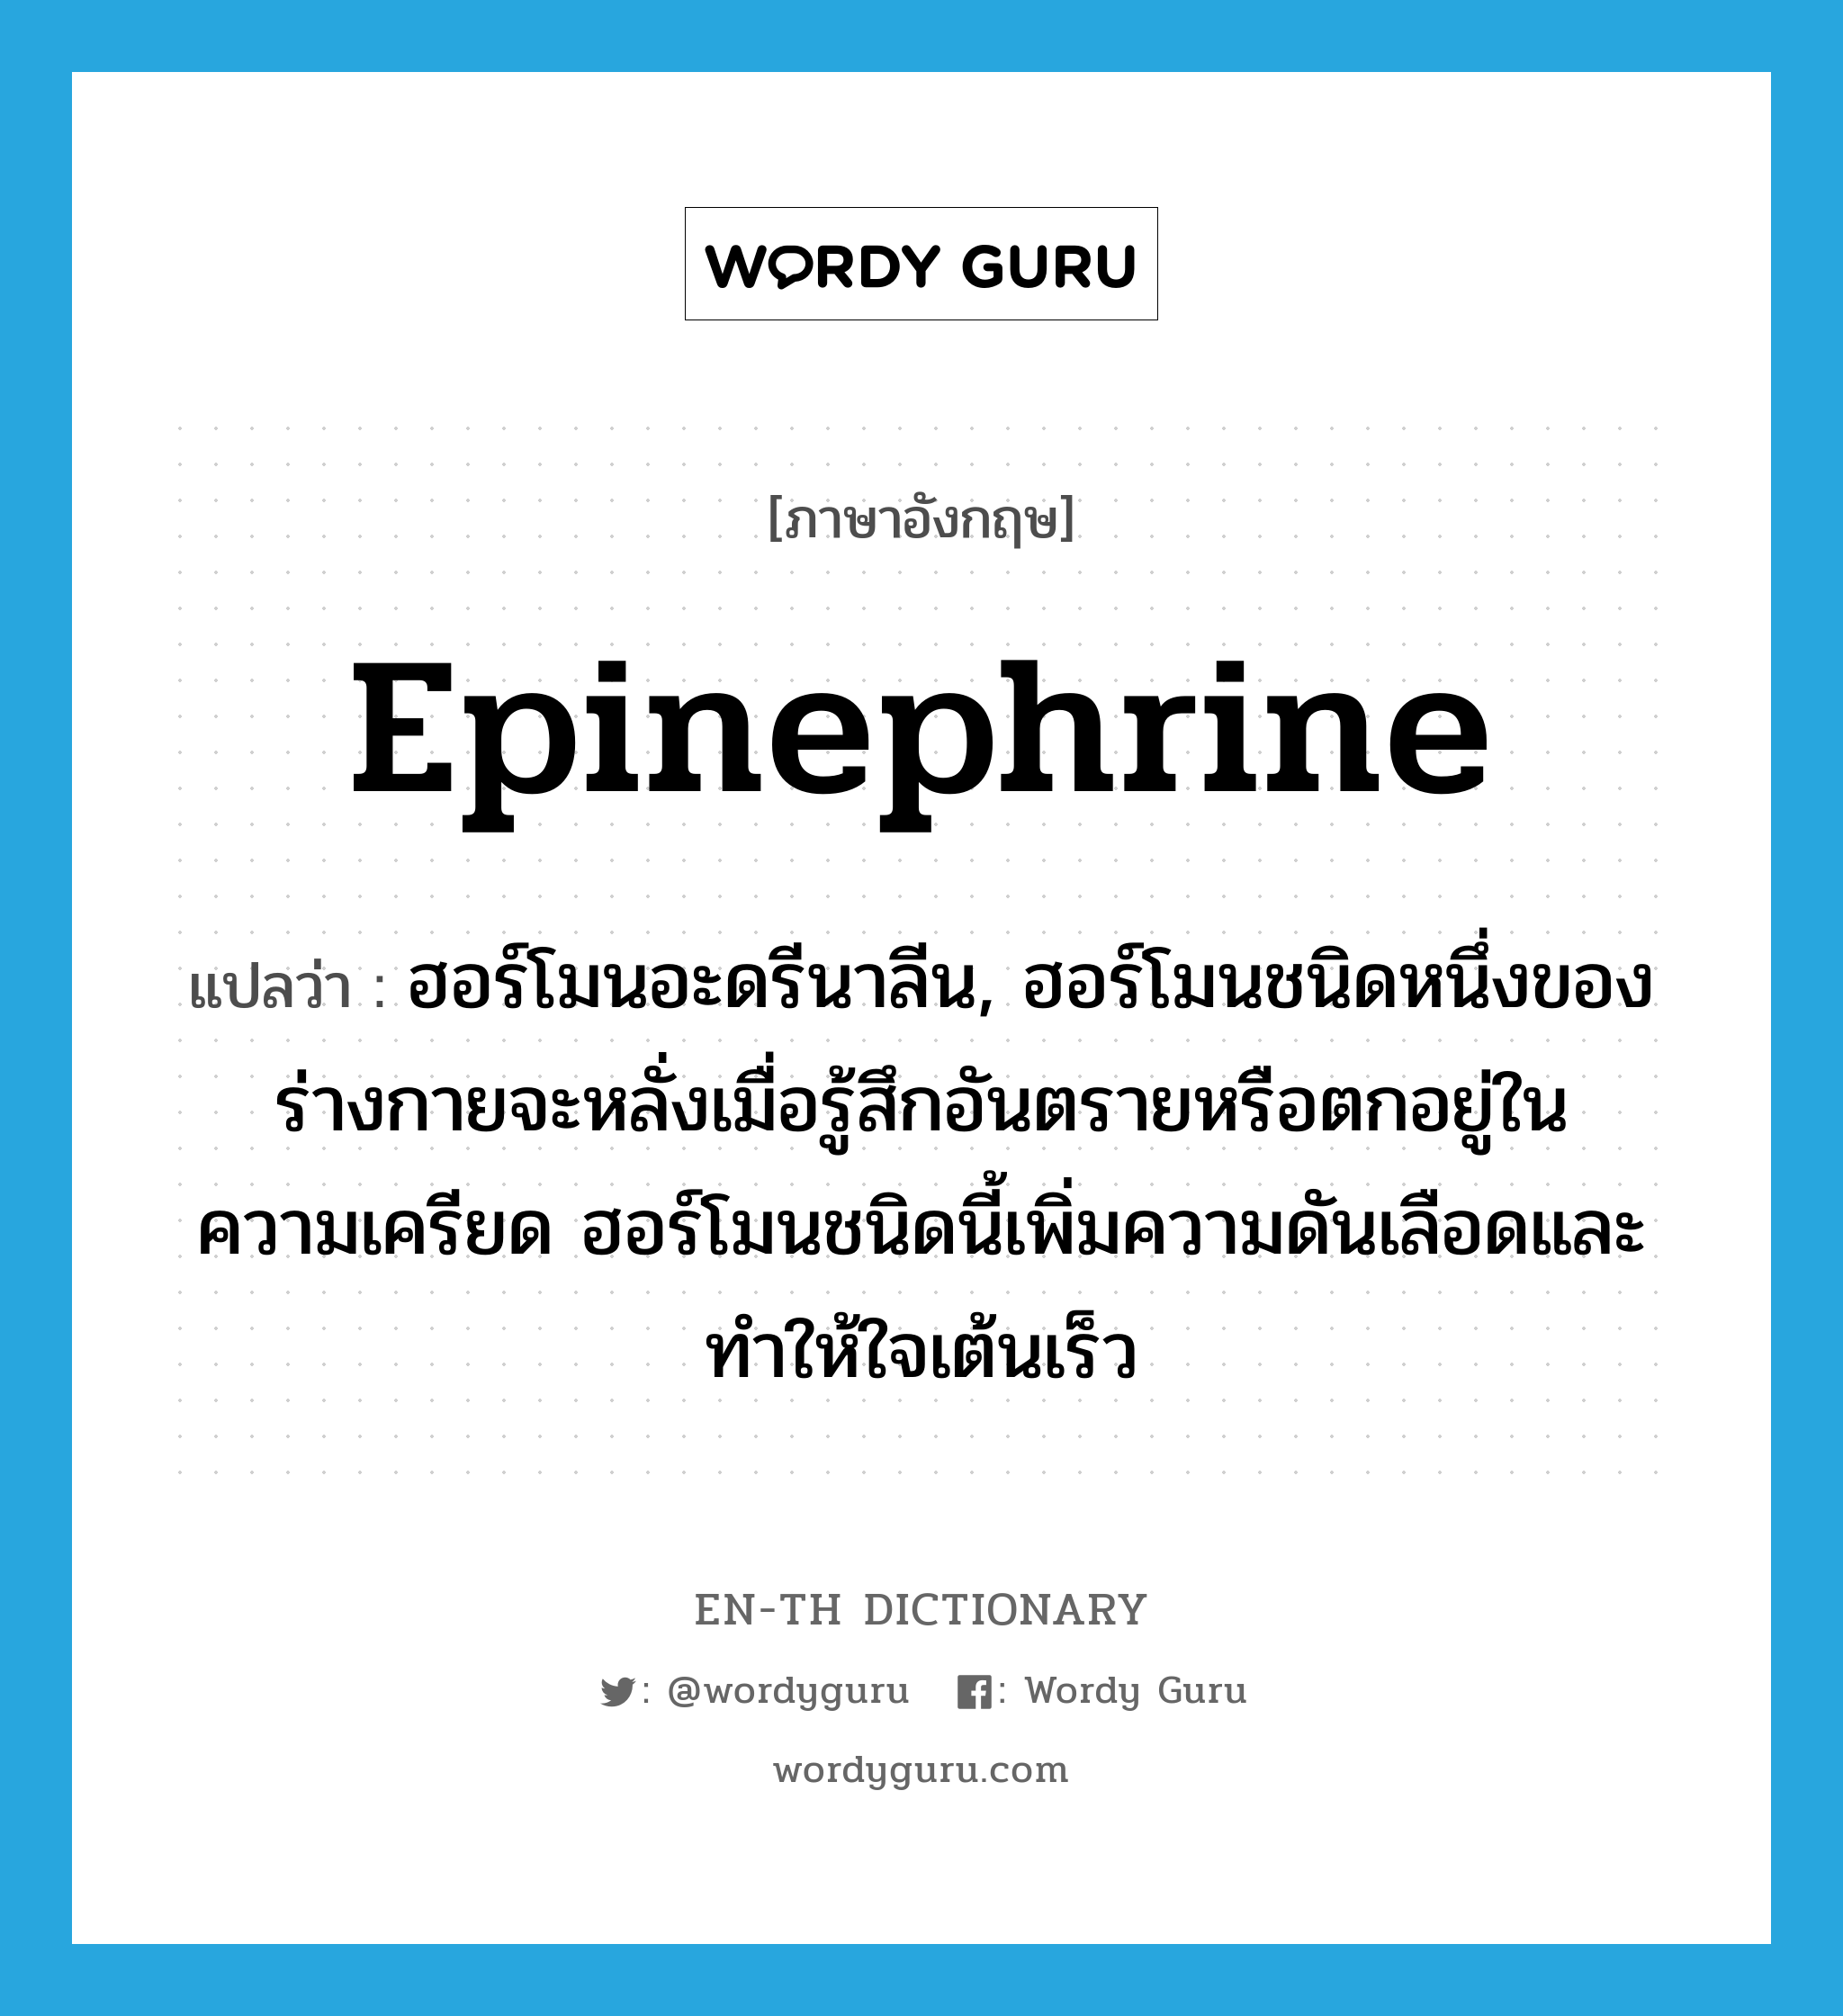 epinephrine แปลว่า?, คำศัพท์ภาษาอังกฤษ epinephrine แปลว่า ฮอร์โมนอะดรีนาลีน, ฮอร์โมนชนิดหนึ่งของร่างกายจะหลั่งเมื่อรู้สึกอันตรายหรือตกอยู่ในความเครียด ฮอร์โมนชนิดนี้เพิ่มความดันเลือดและทำให้ใจเต้นเร็ว ประเภท N หมวด N